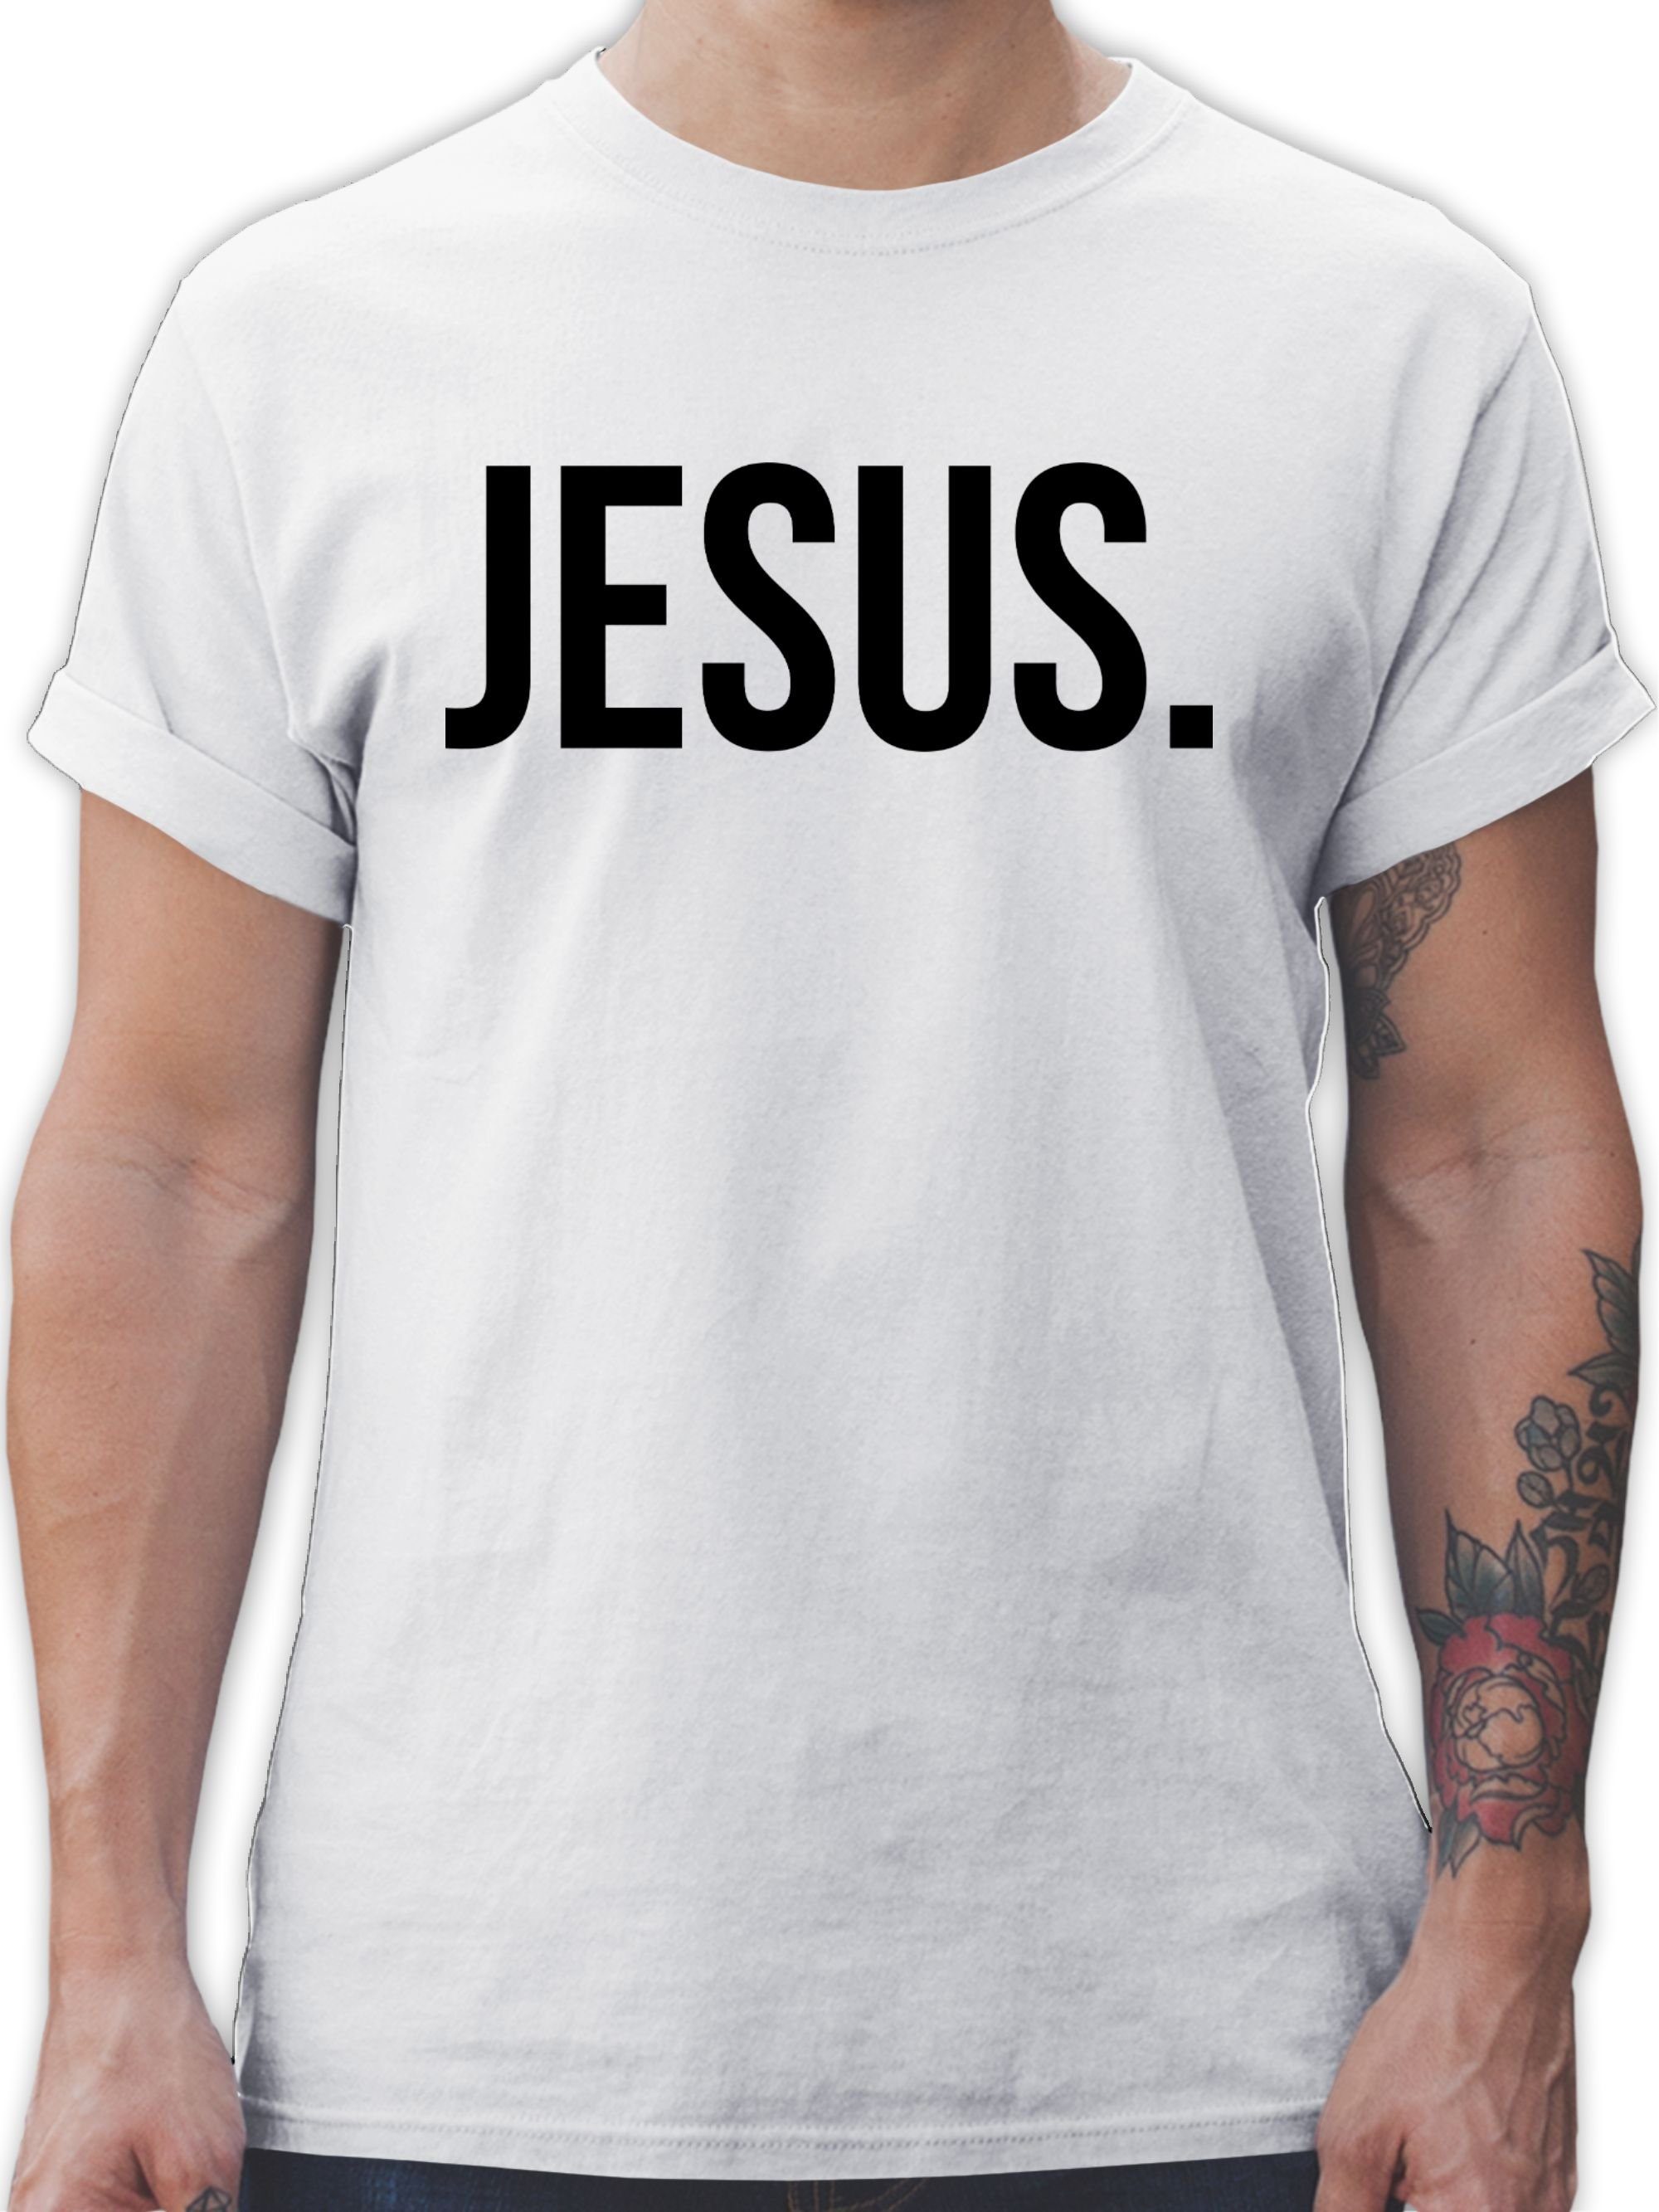 Statement Glaube Religion Christus Shirtracer T-Shirt Weiß Jesus 1